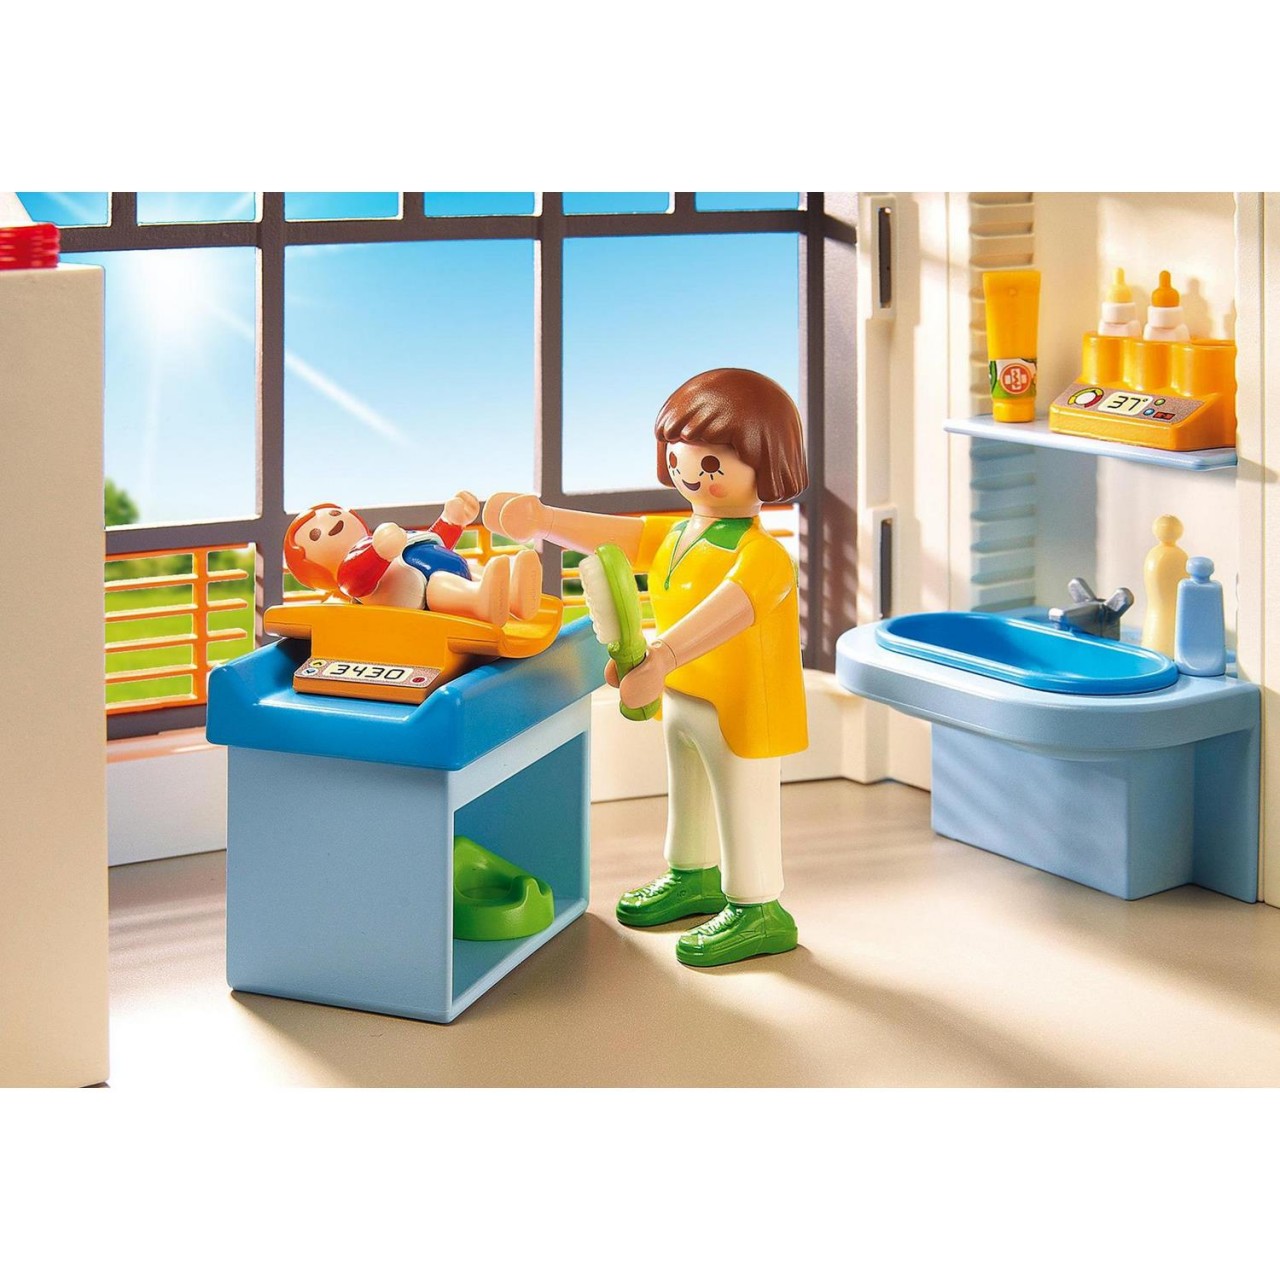 Playmobil 6657 Kinderklinik mit Einrichtung